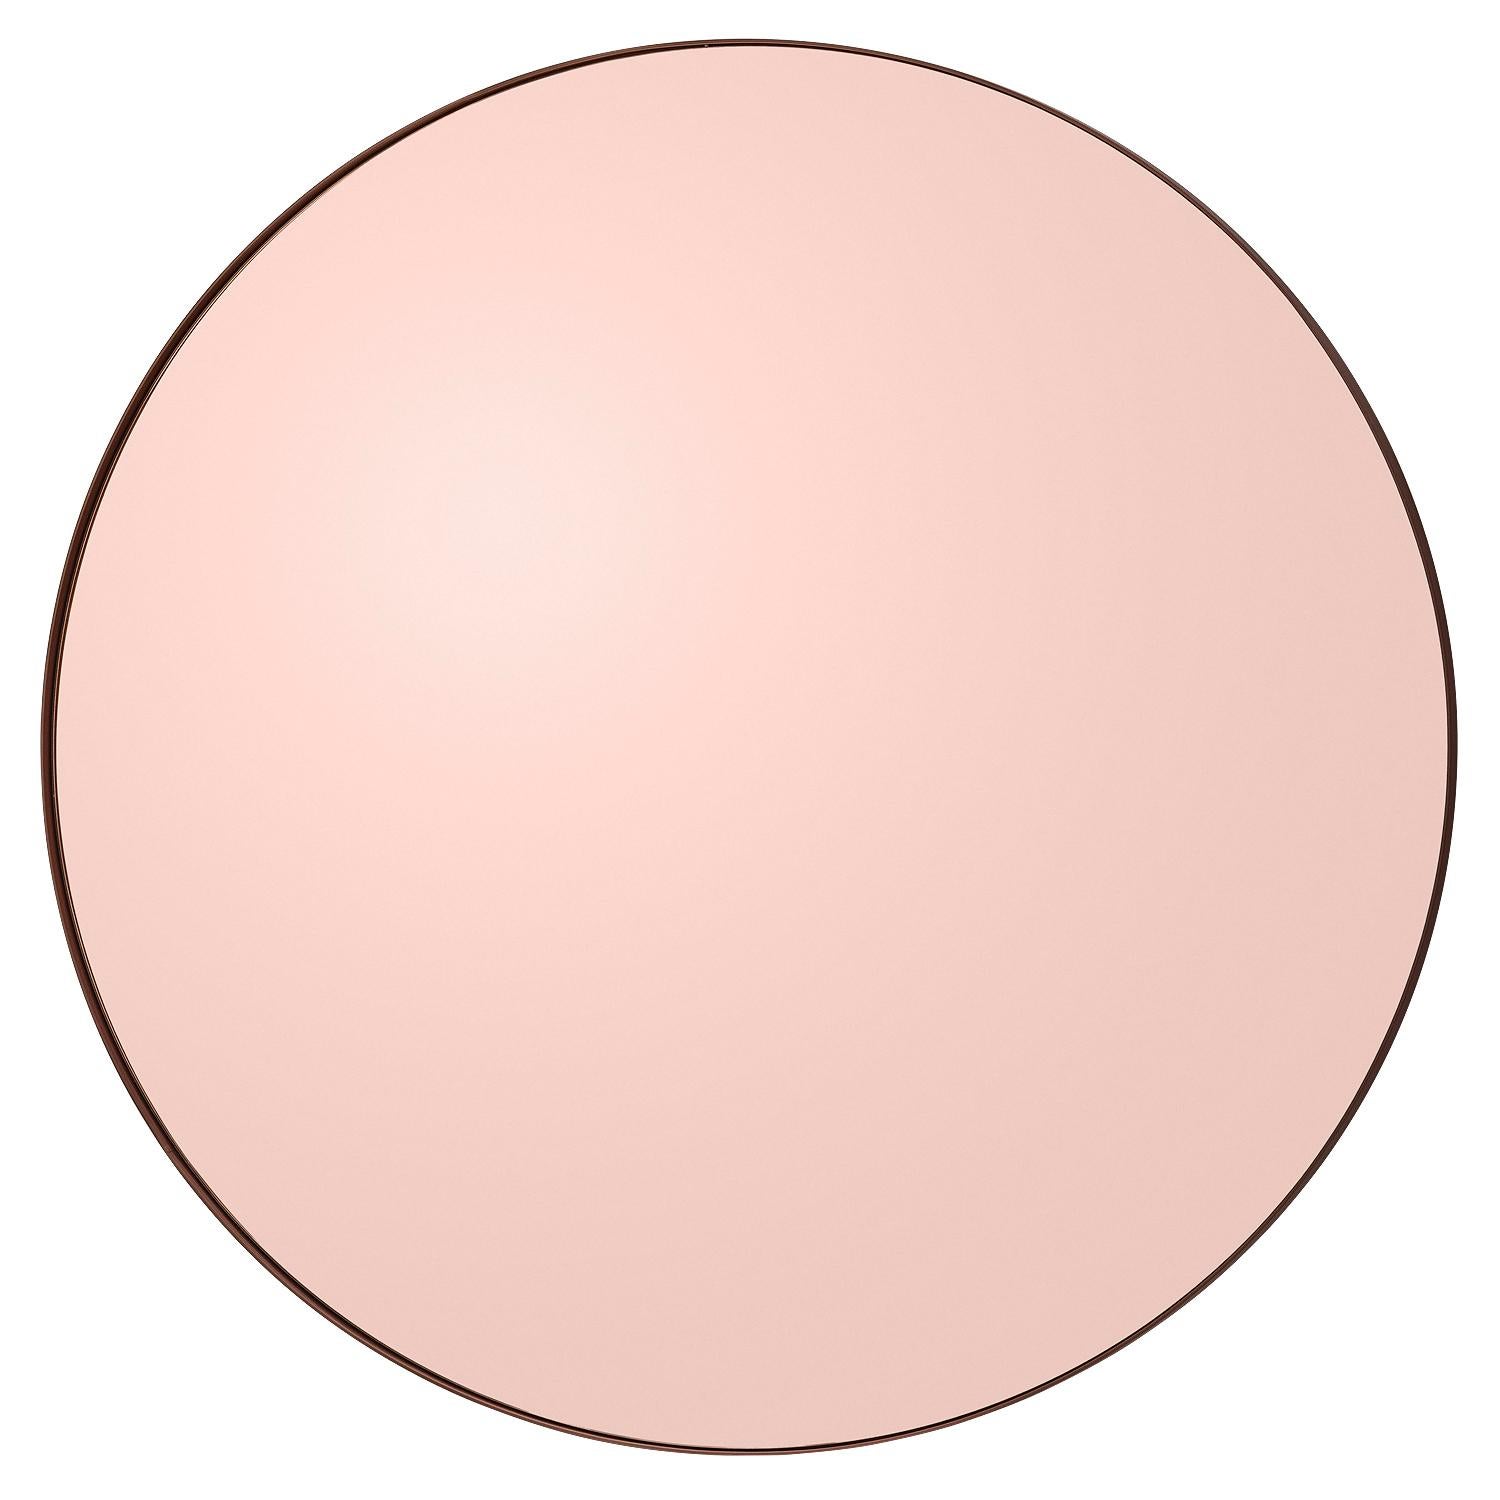 Miroir rond Circum 110 rose par AYTM
Dimensions : Ø 110 x 2 cm
Matériaux : Verre, cuivre, MDF

Les miroirs Circum sont un ajout élégant à la maison et avec leurs cadres fins et leur verre teinté, Circum est également parfait pour les effets